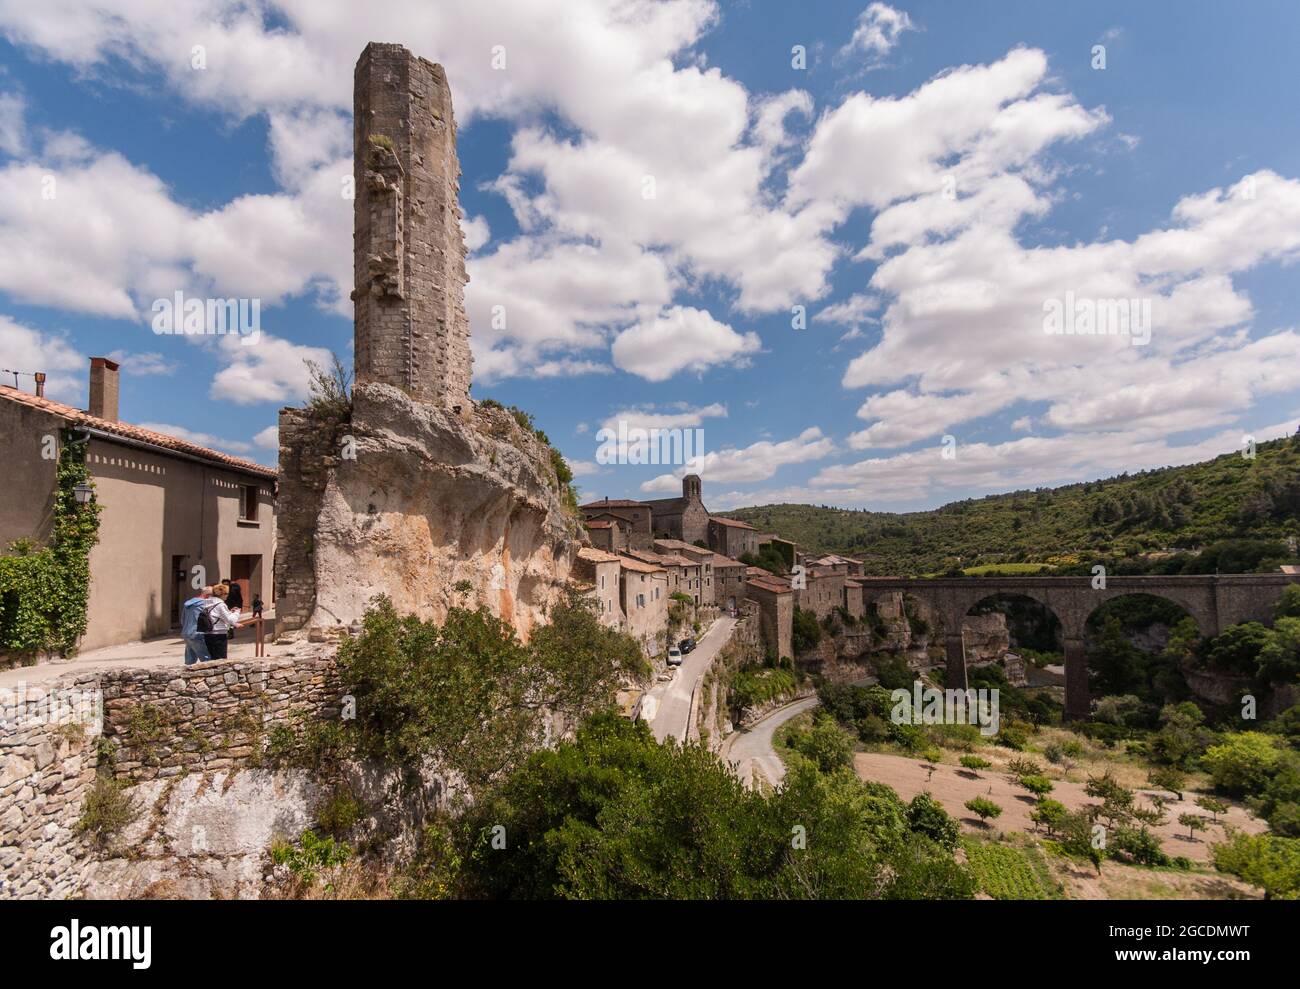 Die Ruine des Turms namens „La Candela“ (die Kerze) ist das Wahrzeichen des mittelalterlichen Dorfes Minerve in Südfrankreich. Stockfoto